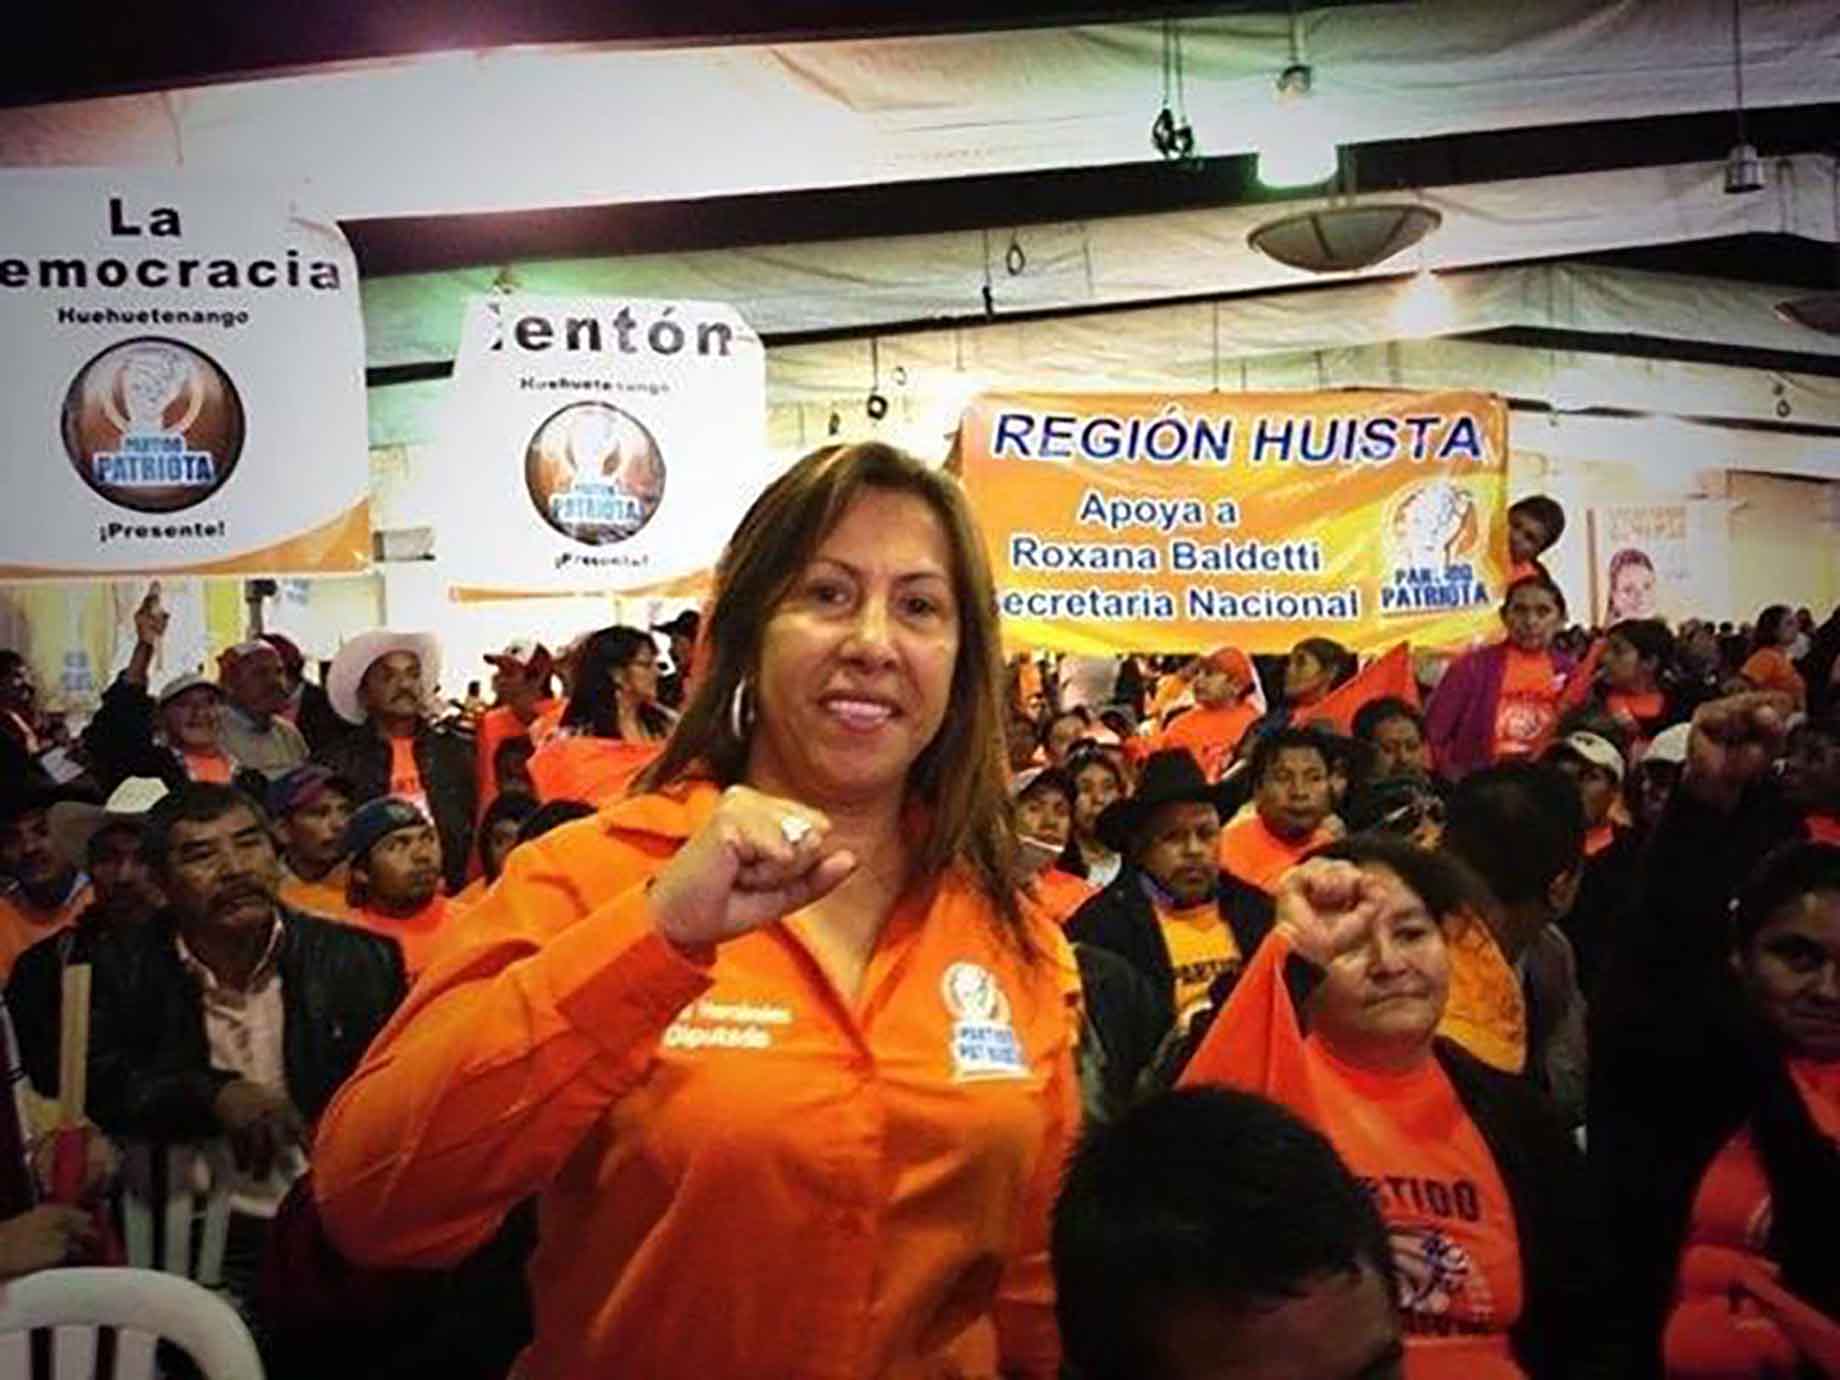 Hernández en un mitin de campaña del Partido Patriota en 2011 en La Democracia, Huehuetenango. Foto: Facebook Sofía Hernández